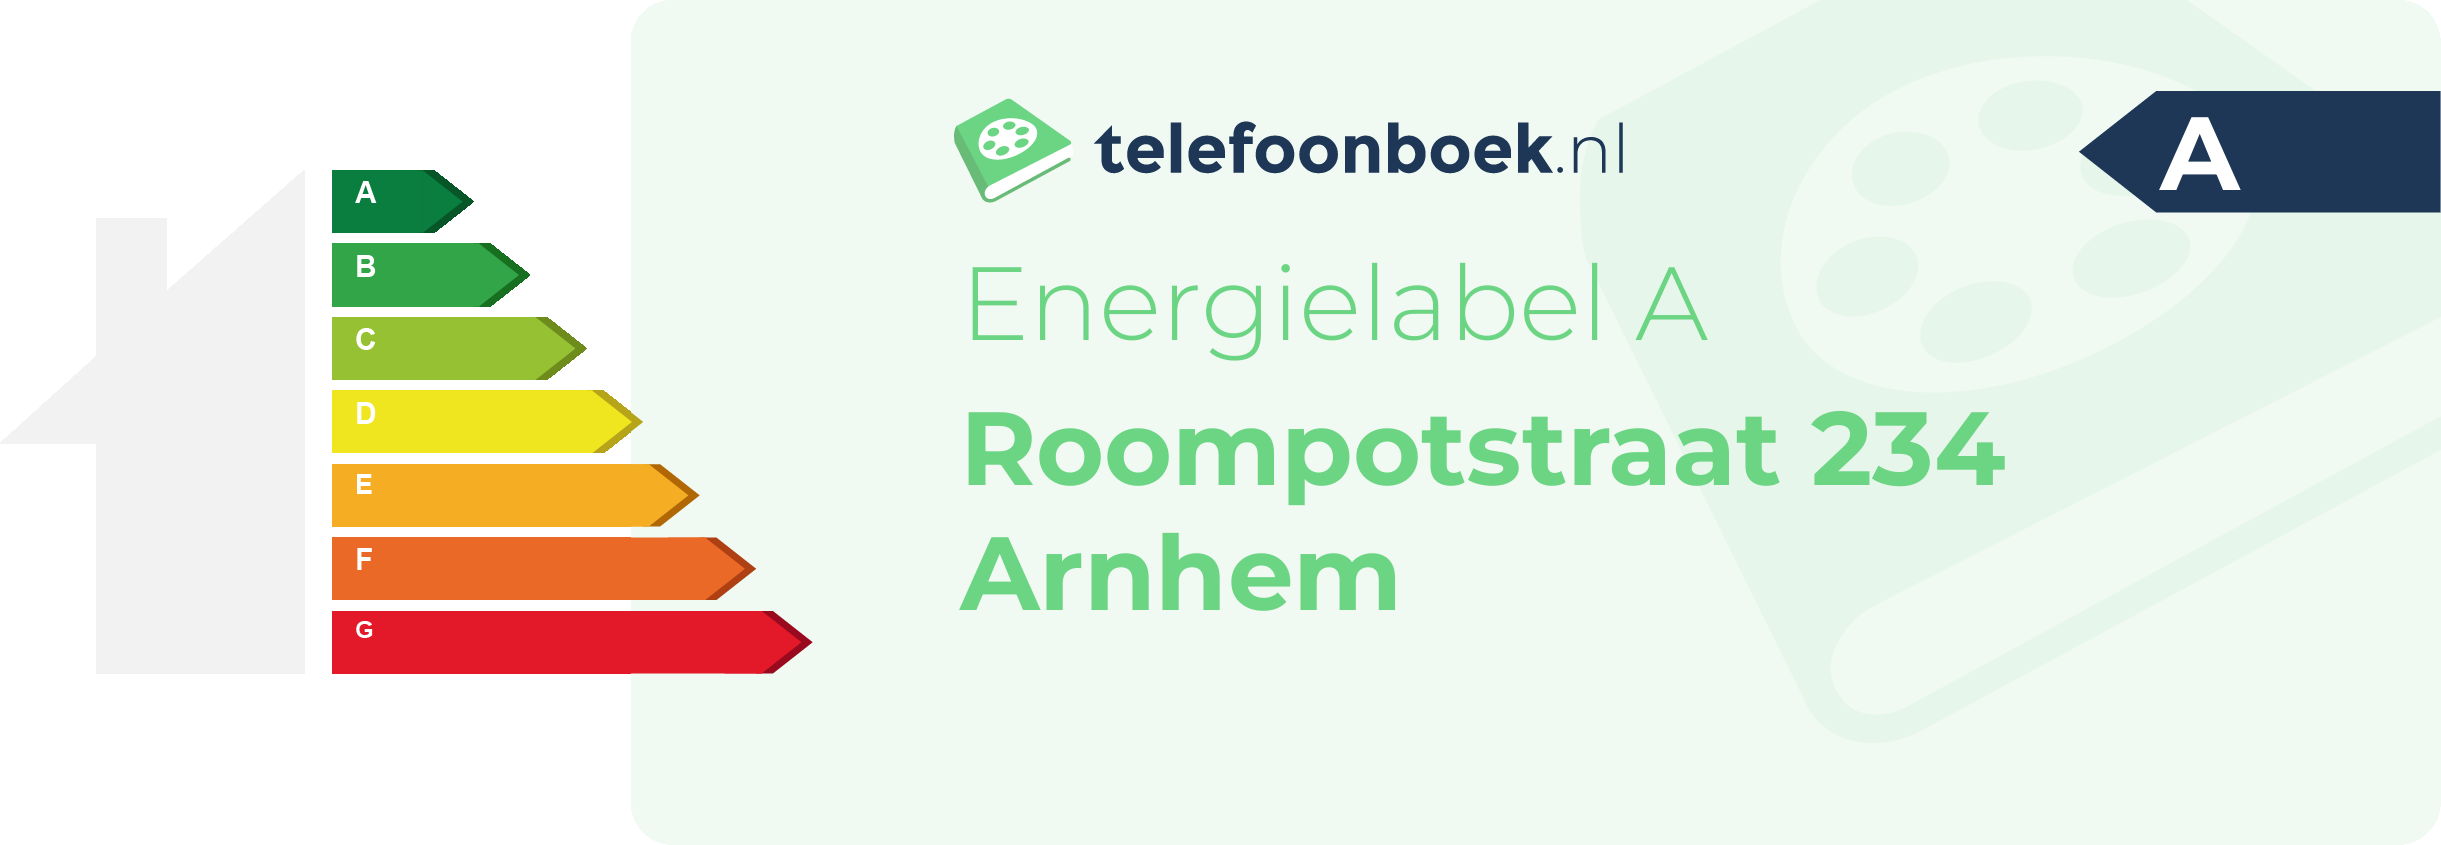 Energielabel Roompotstraat 234 Arnhem